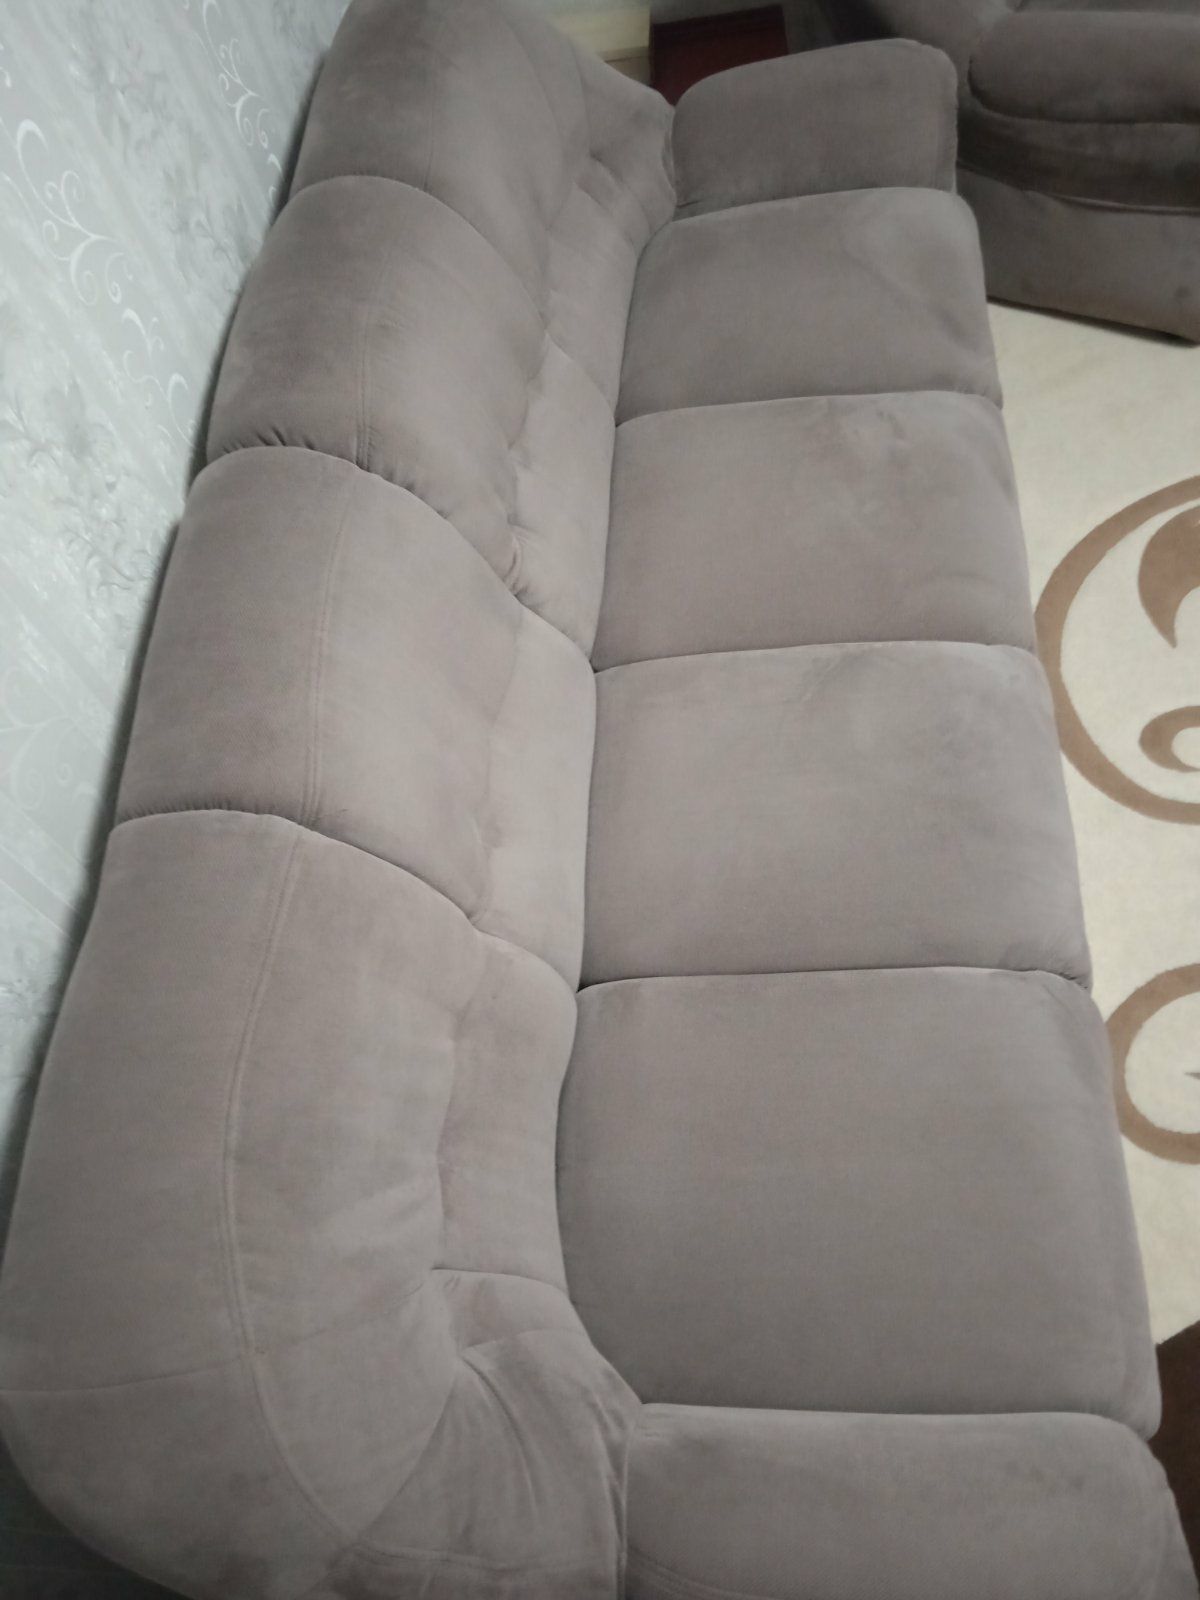 Мягкий уголок "Болеро" ТМ LIVS
диван+2 кресла